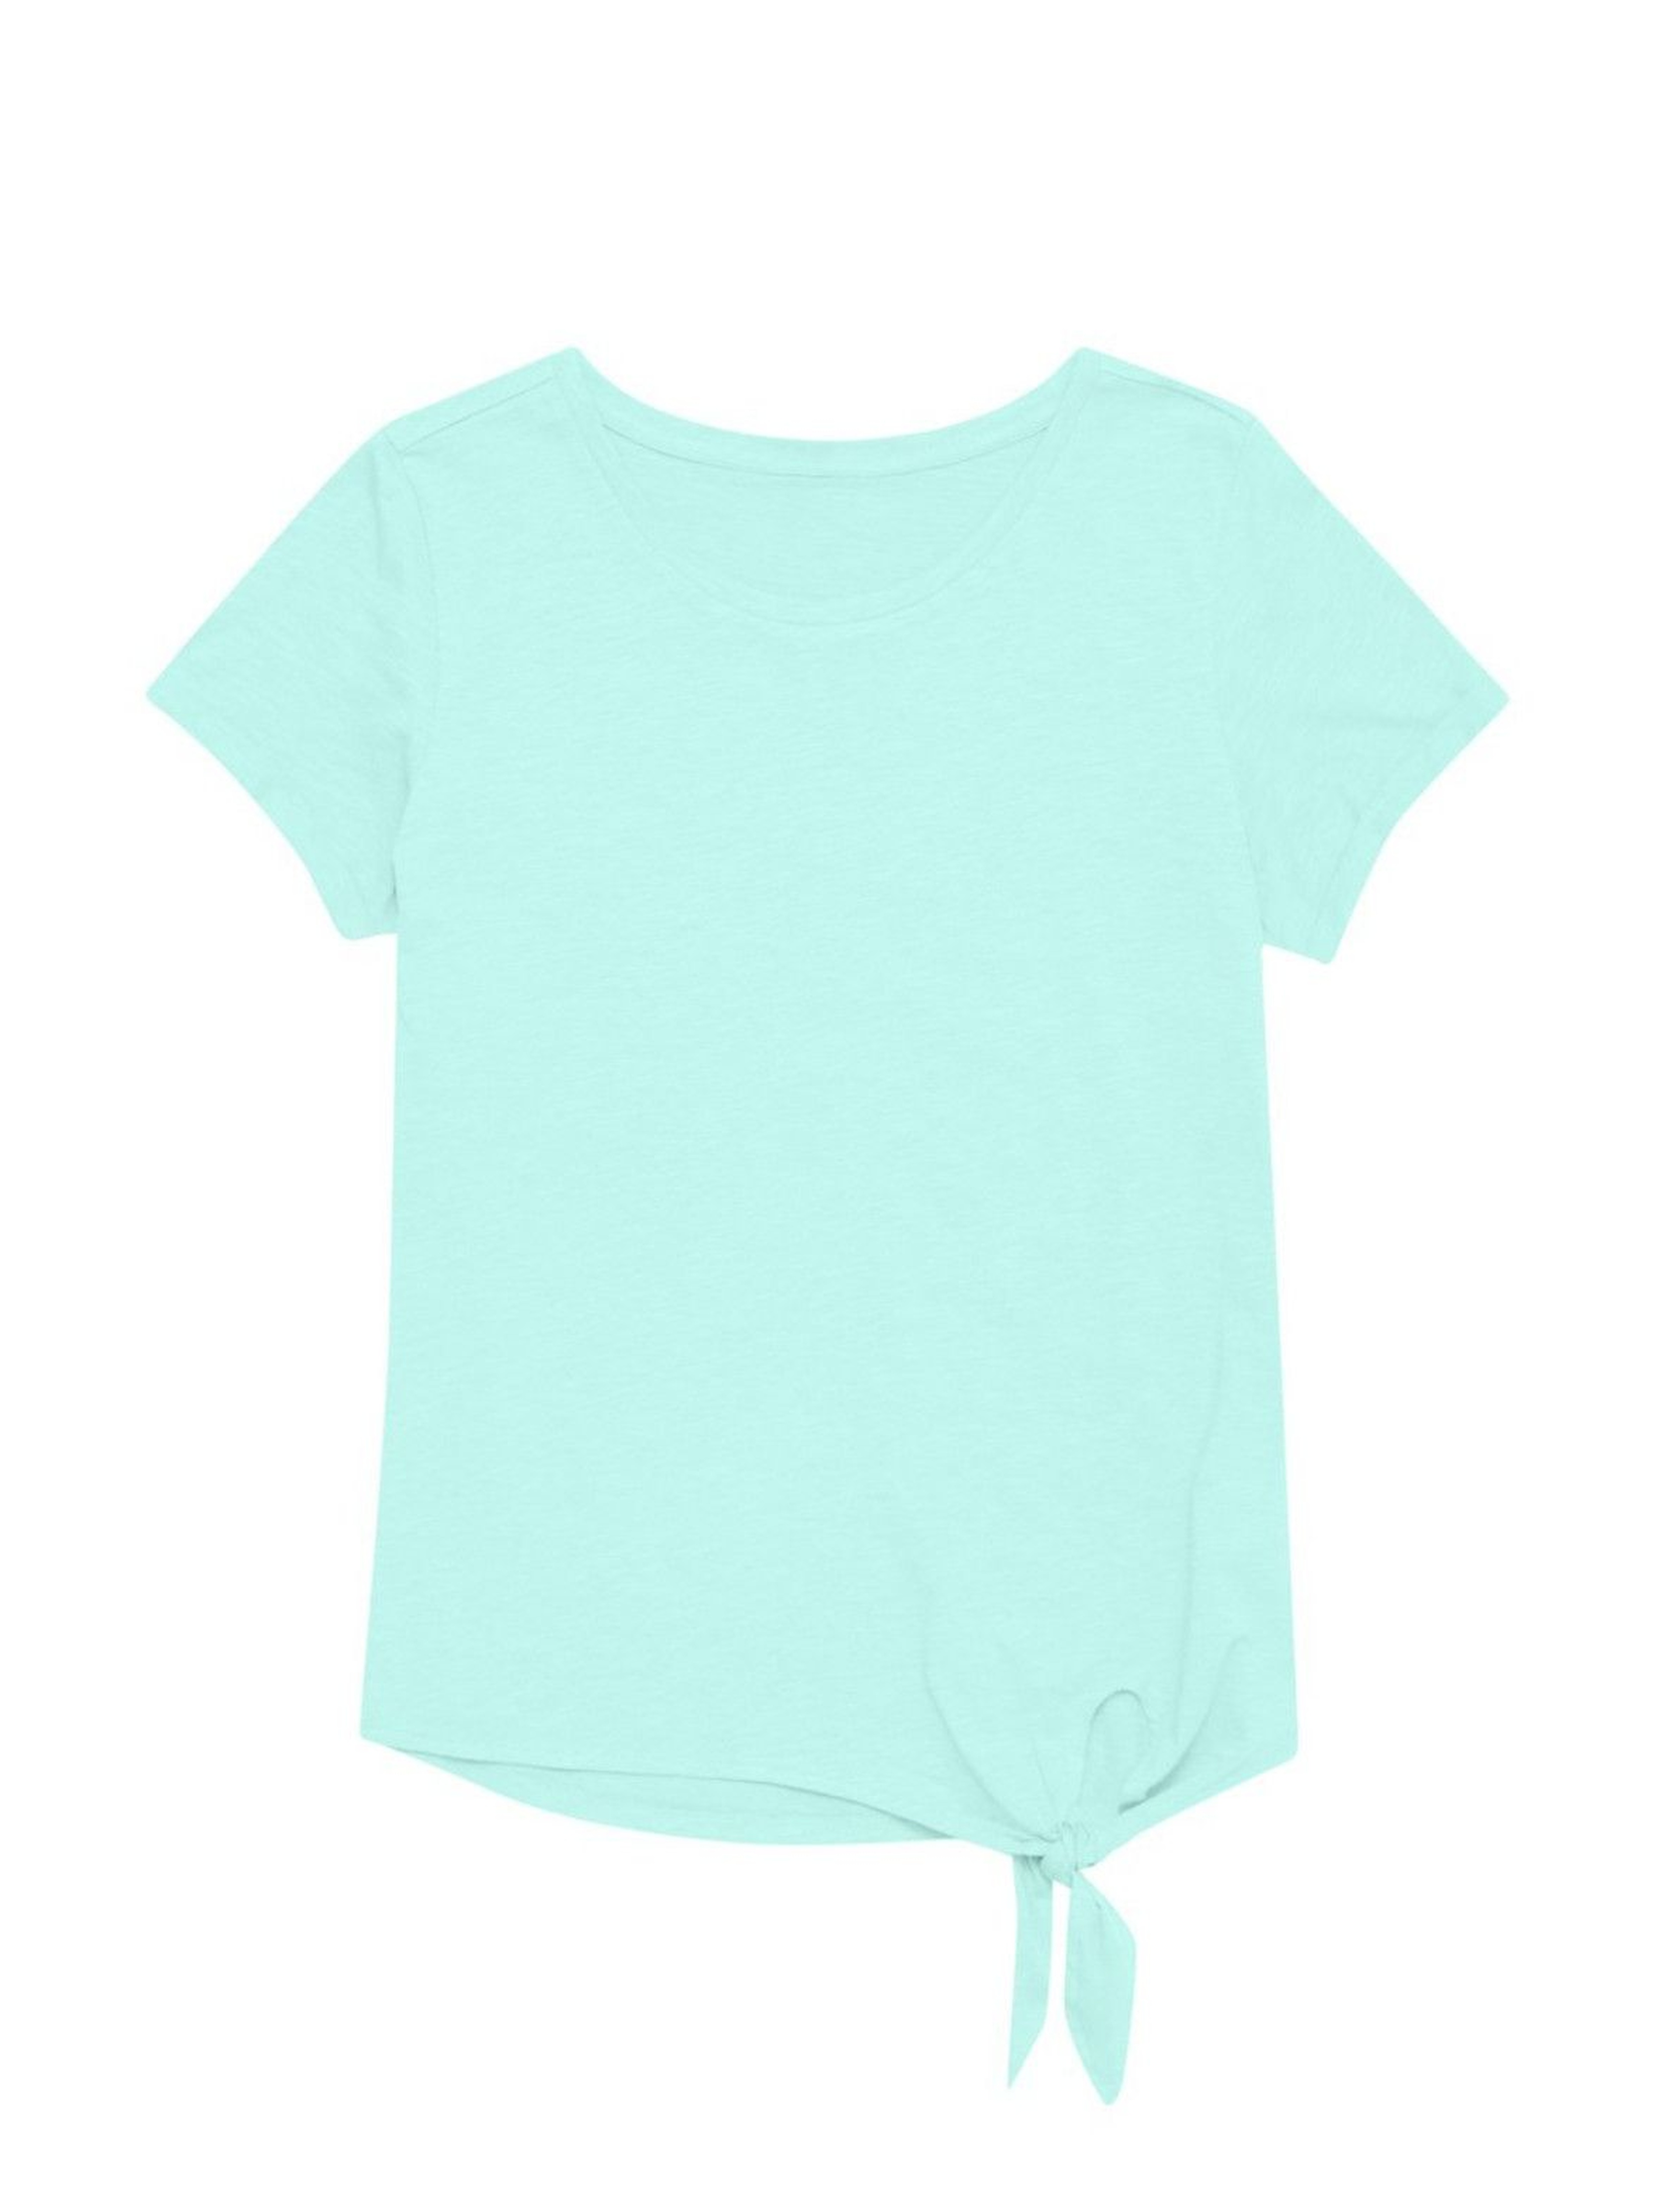 Bawełniany niebieski T-shirt damski na krótki rękaw z ozdobnym wiązaniem